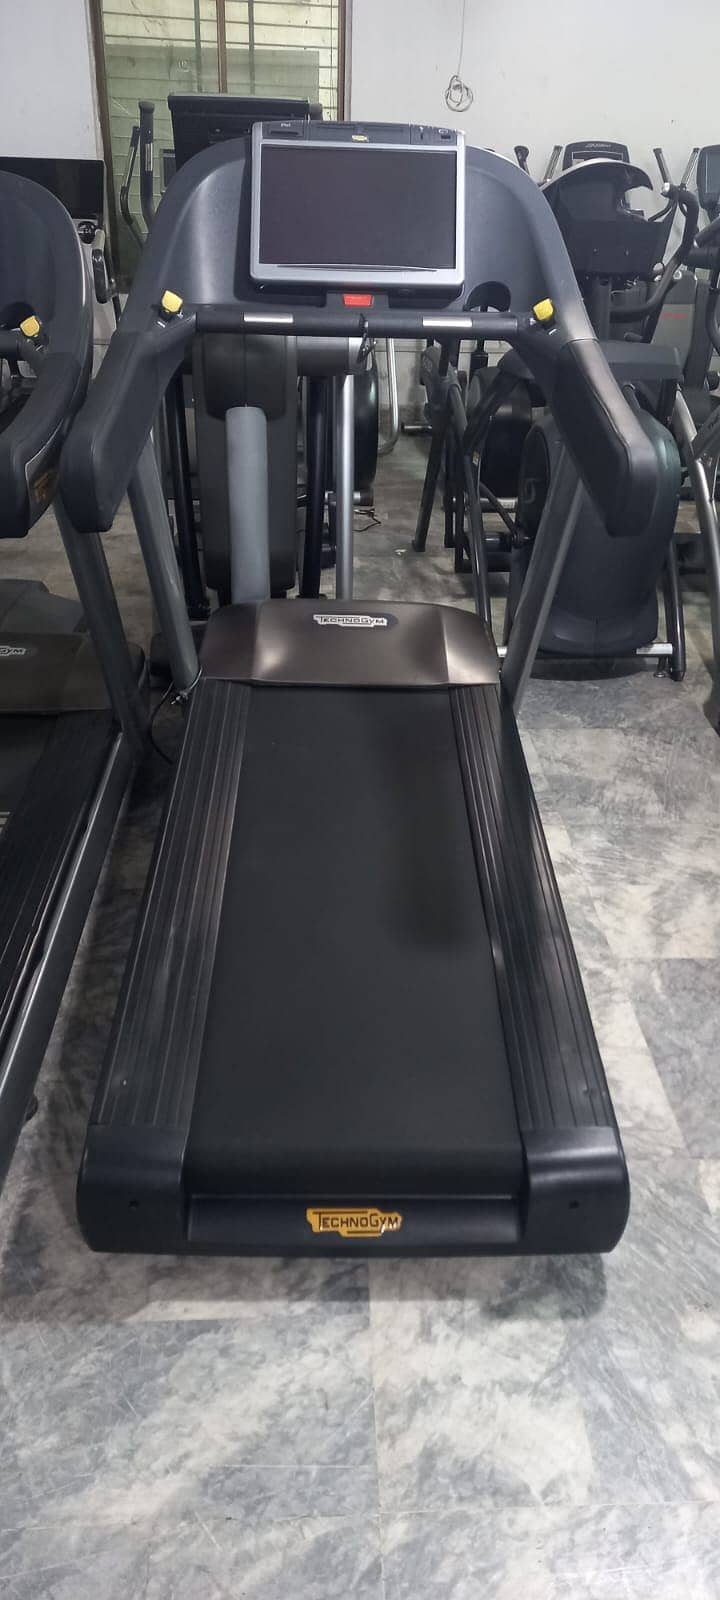 treadmills Technogym Refurbished Running Machine Ellipticals dumbbells 4